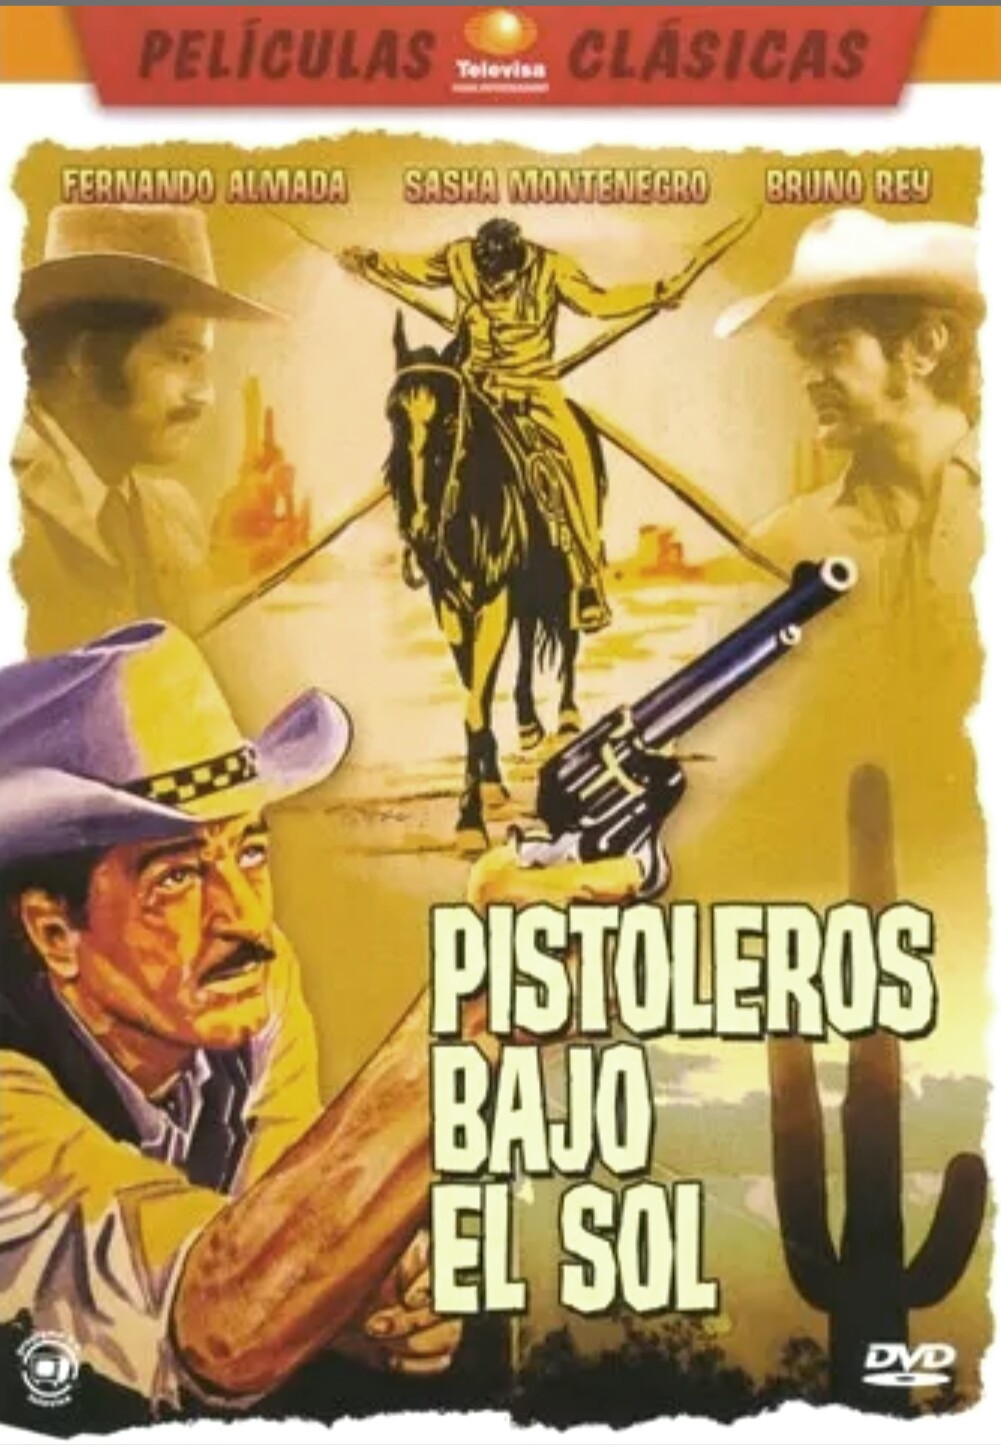 Pistoleros bajo el sol (1974) Screenshot 1 